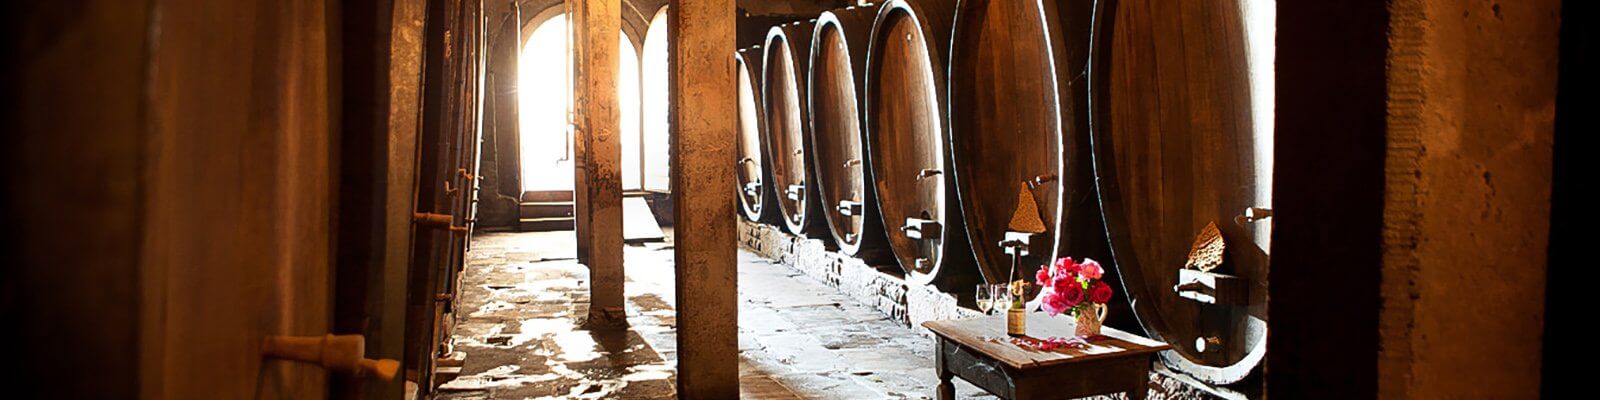 Onze collectie van Domaine Weinbach - Vind deze bij Onshore Cellars uw jacht wijn leverancier